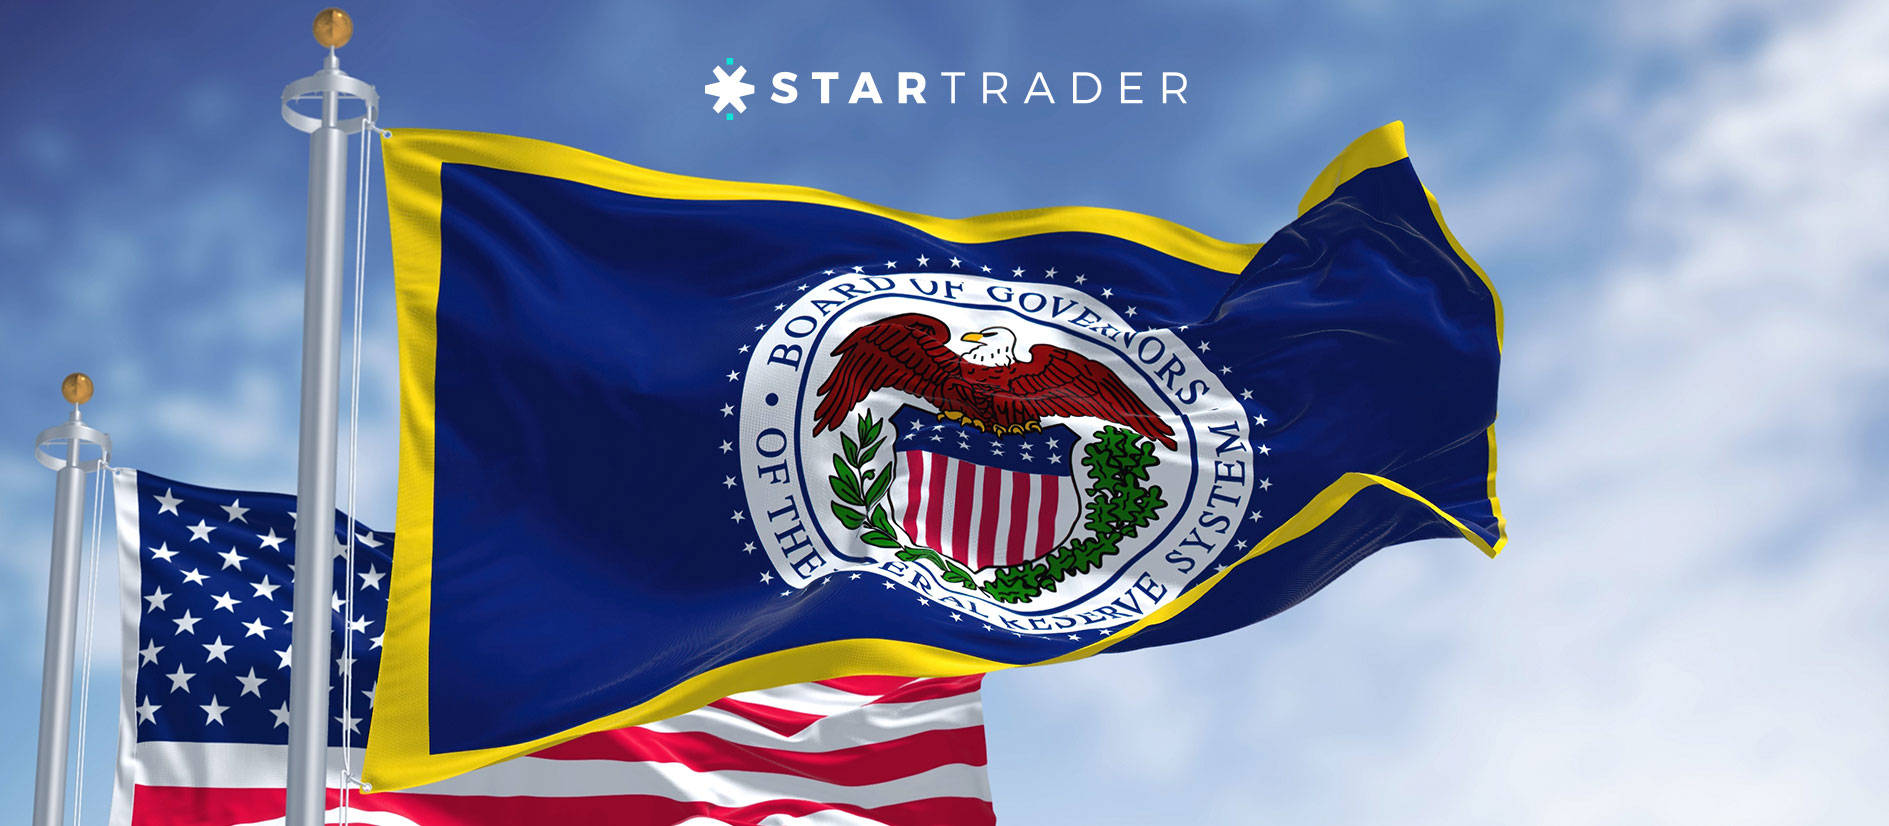 深度解读STARTRADER外汇-美联储的缩表策略及其对金融市场的影响